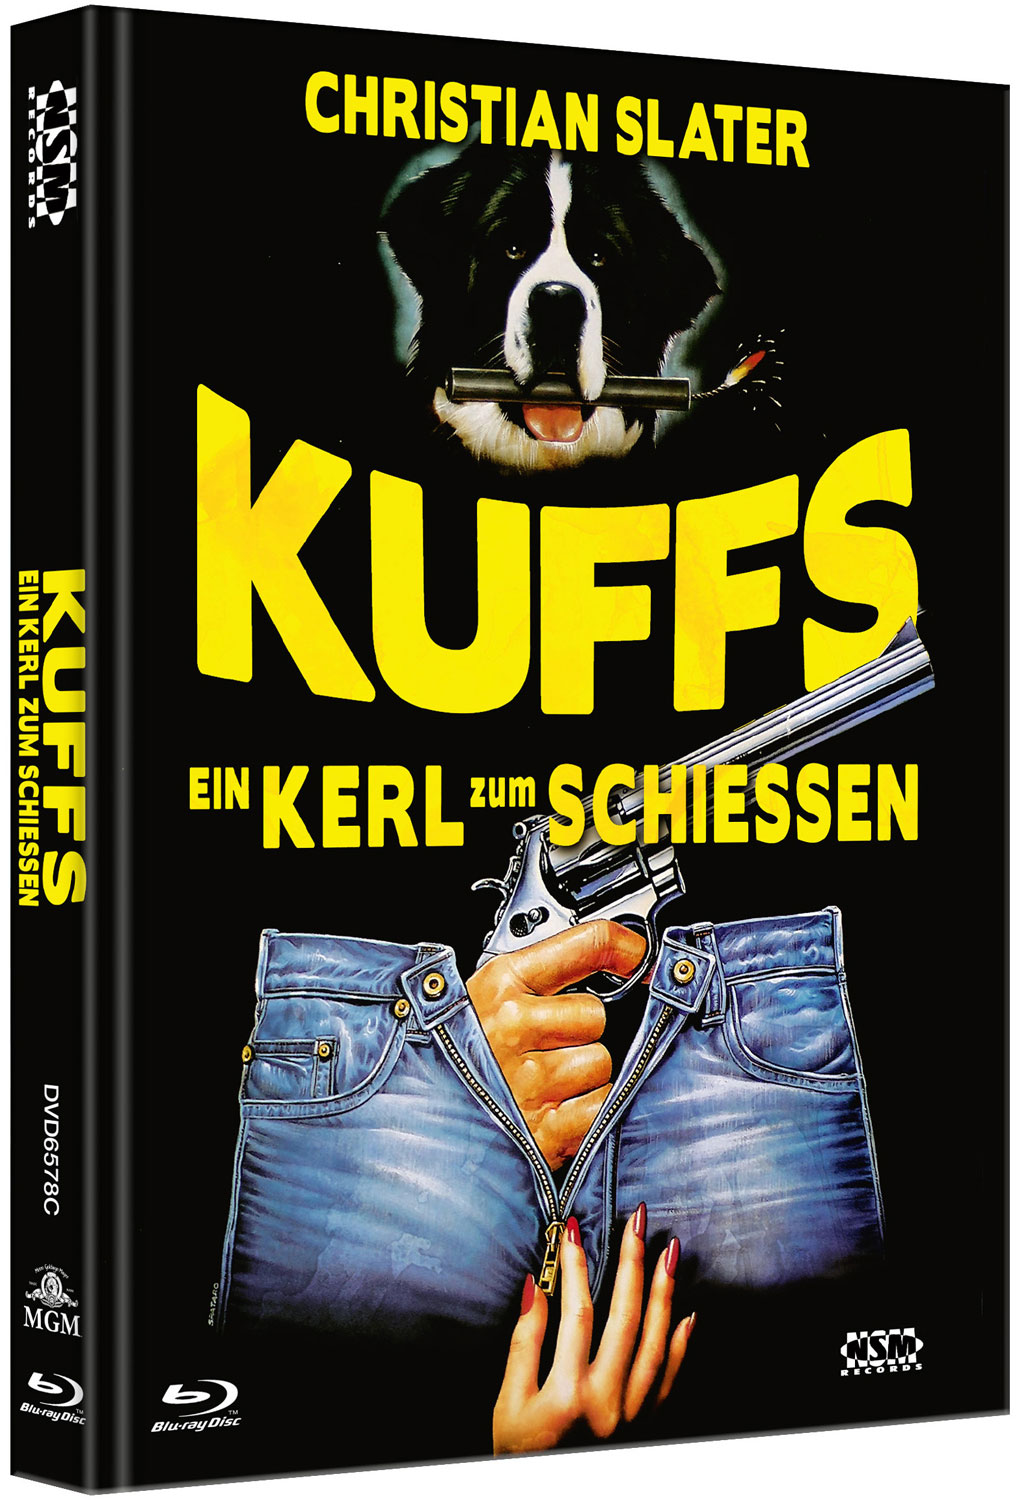 KUFFS - EIN KERL ZUM SCHIESSEN (Blu-Ray+DVD) - Cover C - Mediabook - Limited 333 Edition